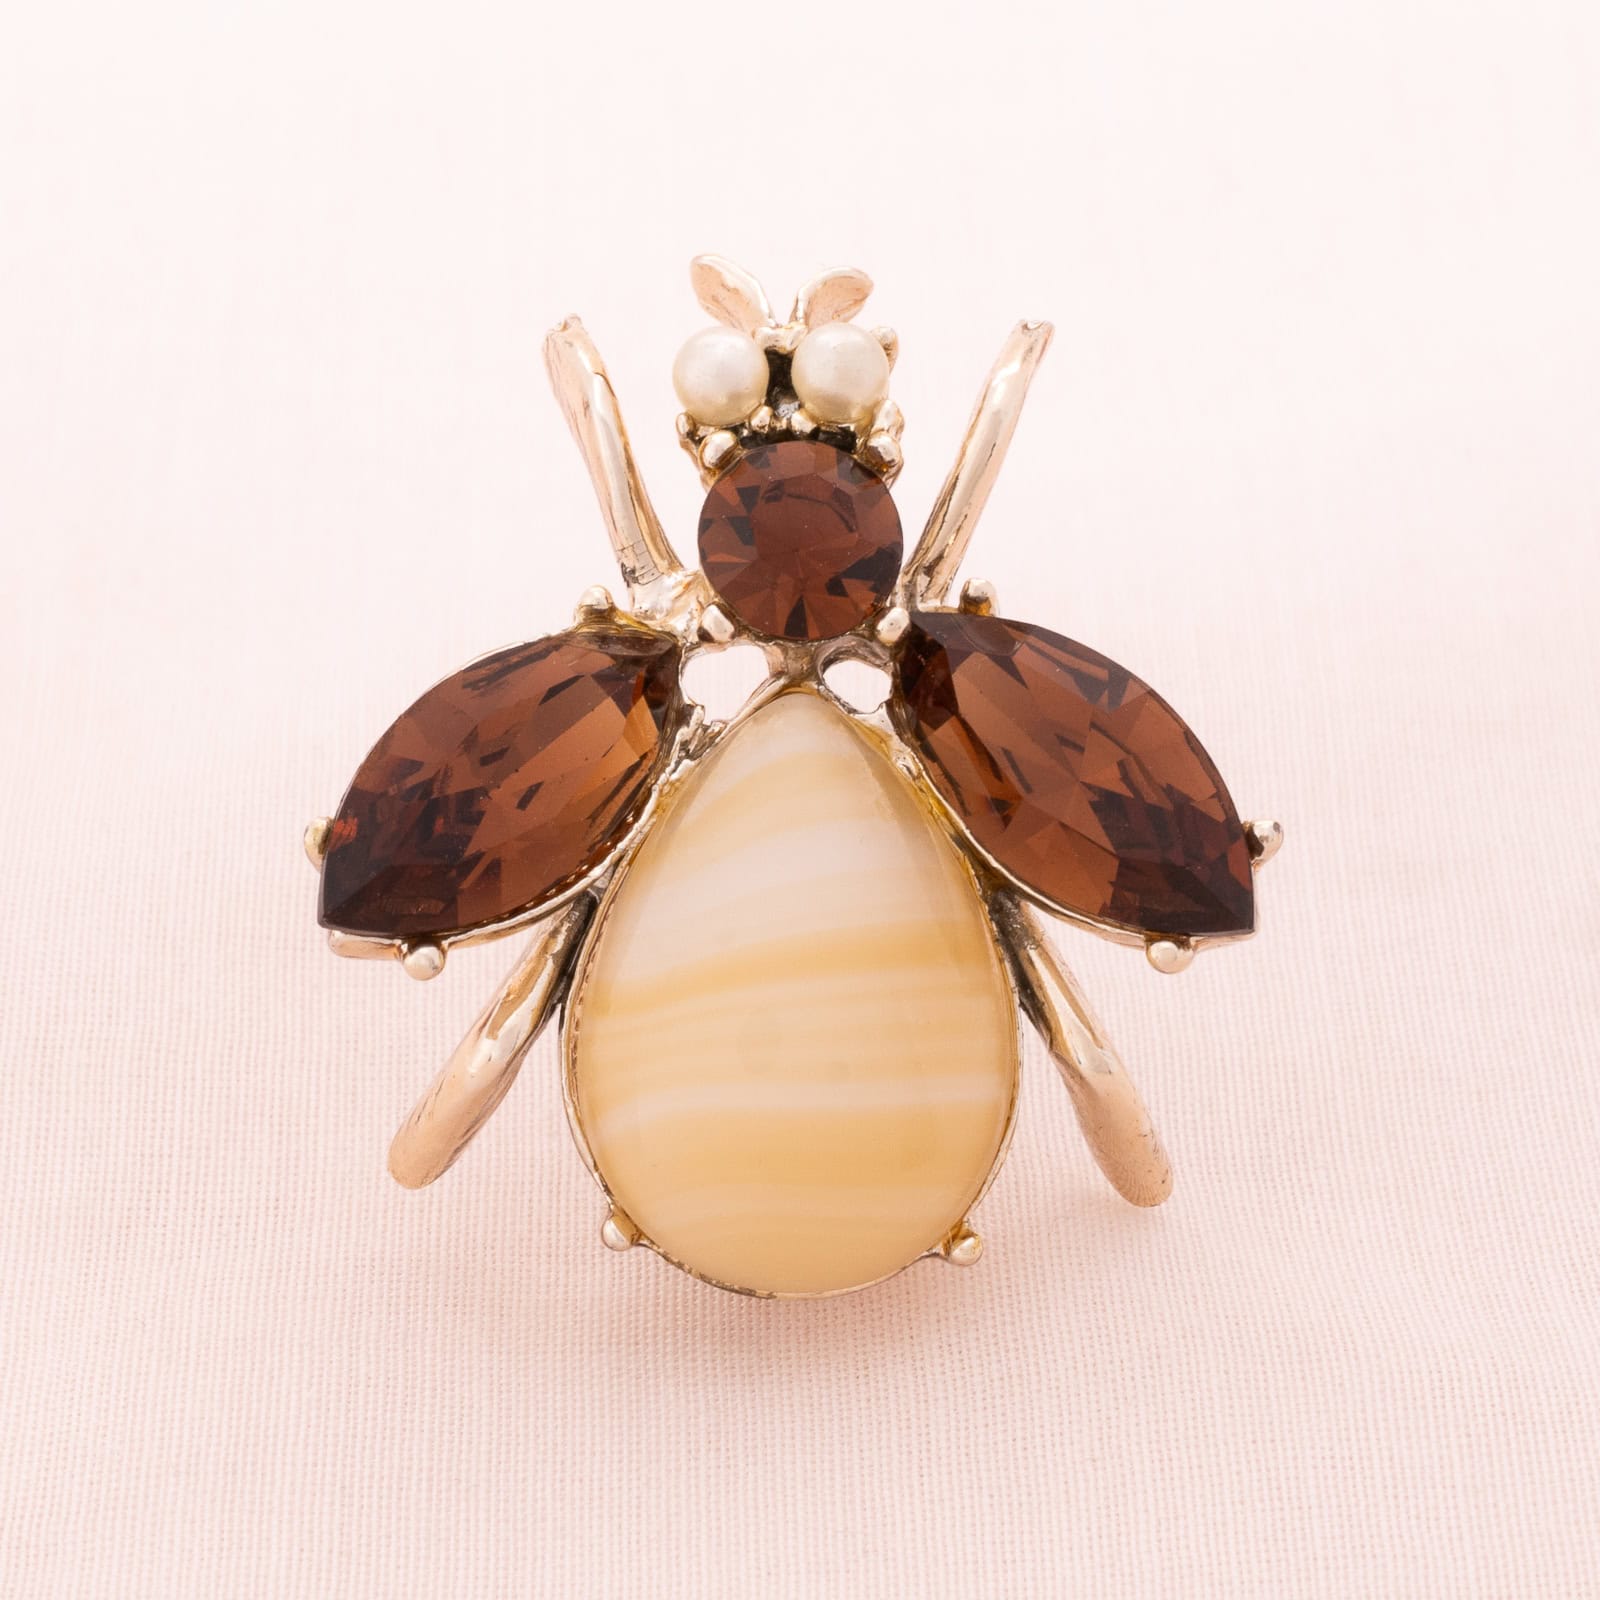 Bienen-Brosche-mit-braunem-Strass-und-Perlenaugen-verziert